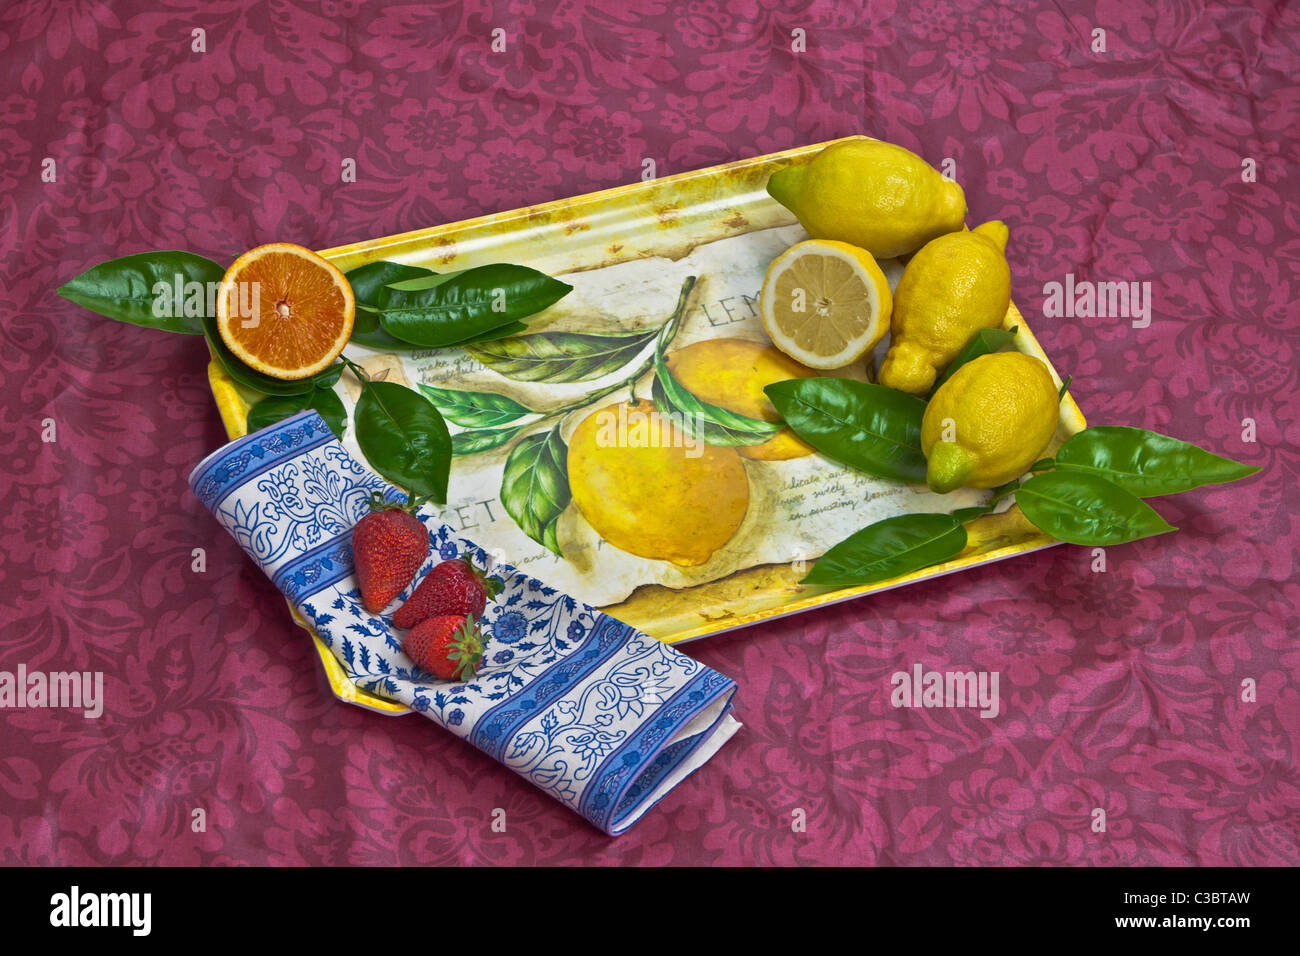 Una bandeja con naranjas, limones y fresas. Foto de stock